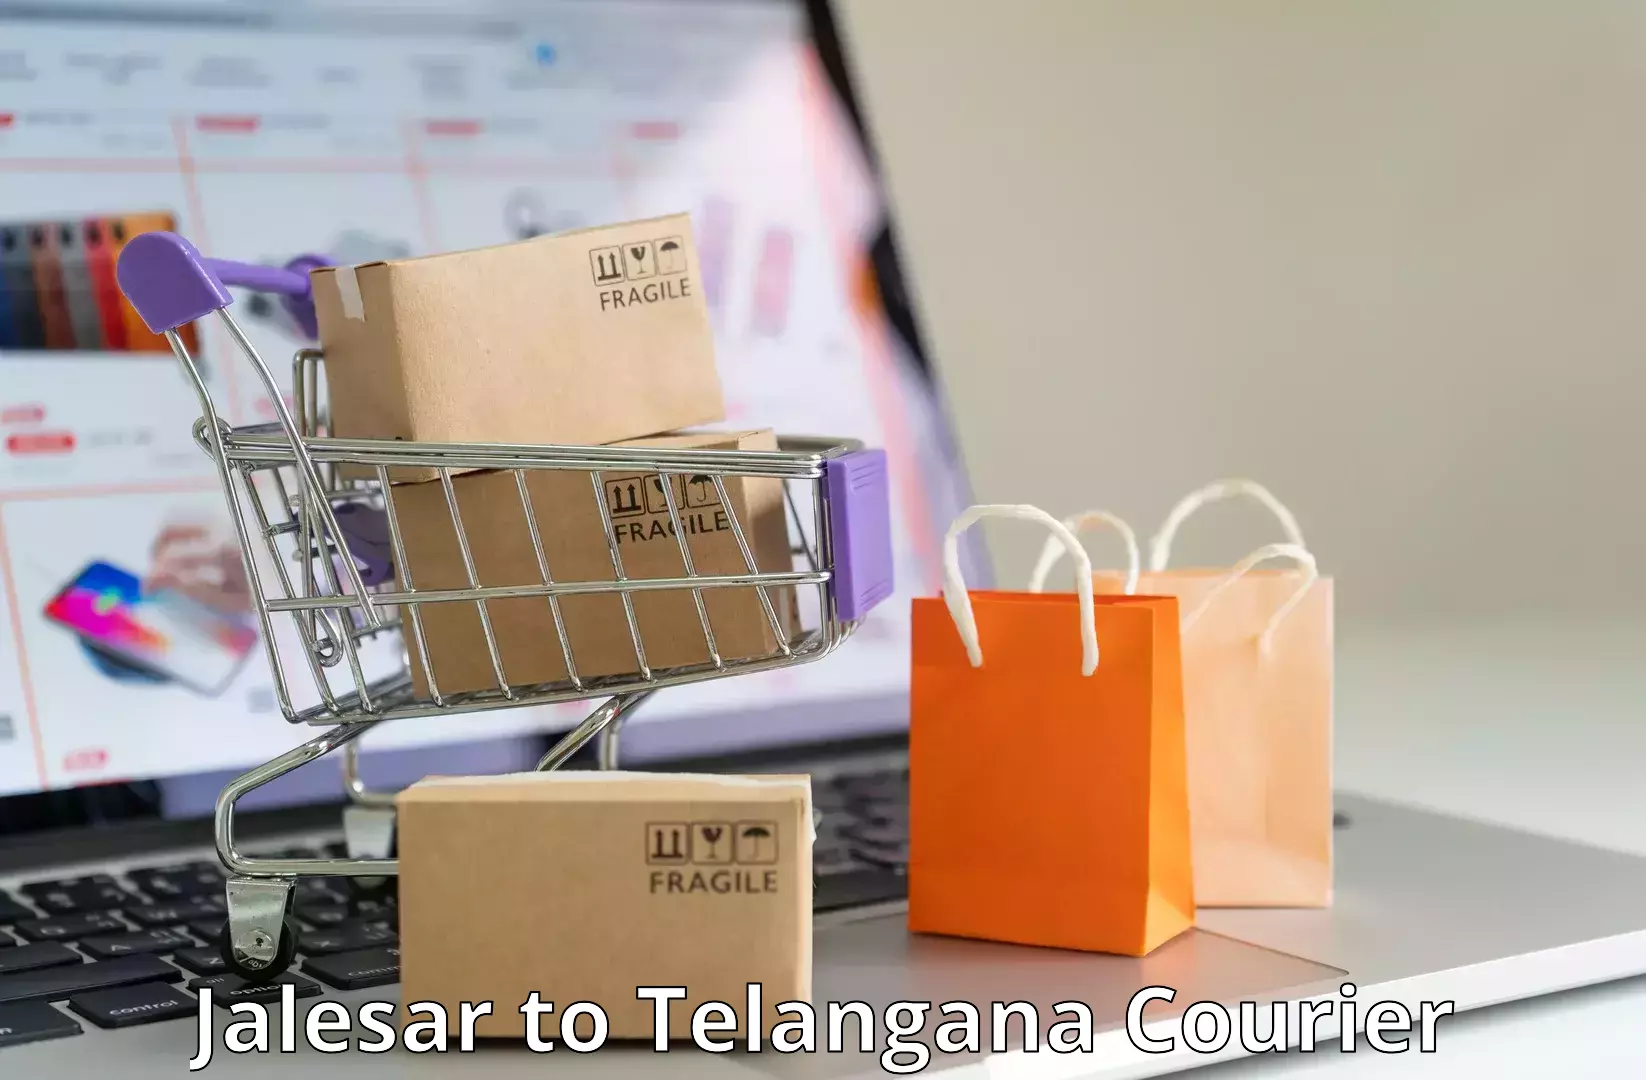 Customer-centric shipping in Jalesar to Devarakonda